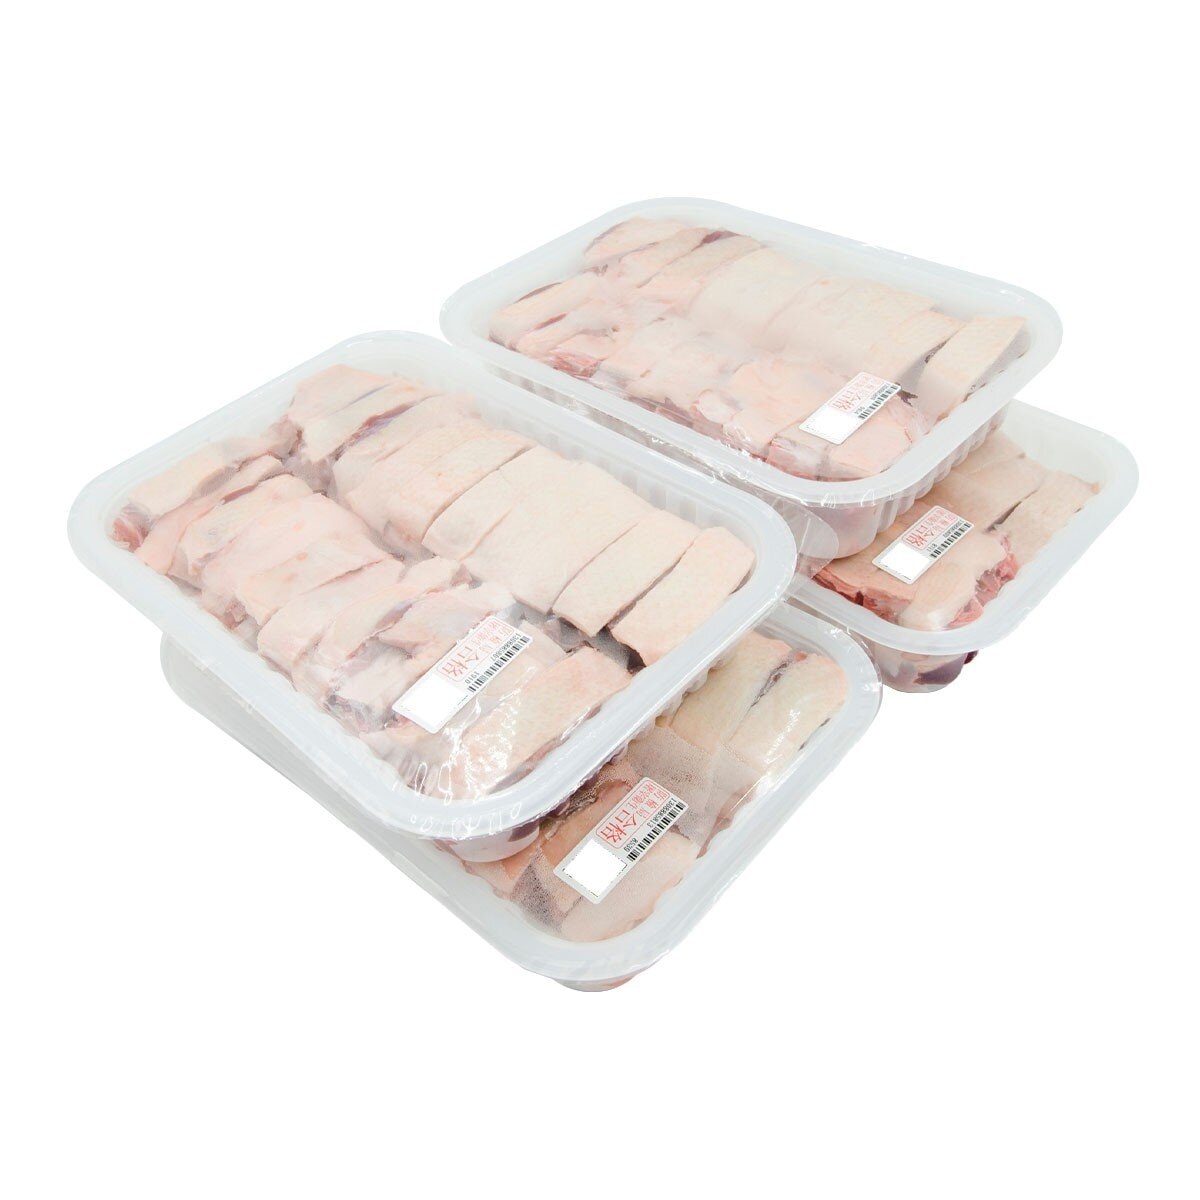 台灣冷凍鴨肉切塊 0.8公斤 X 4入